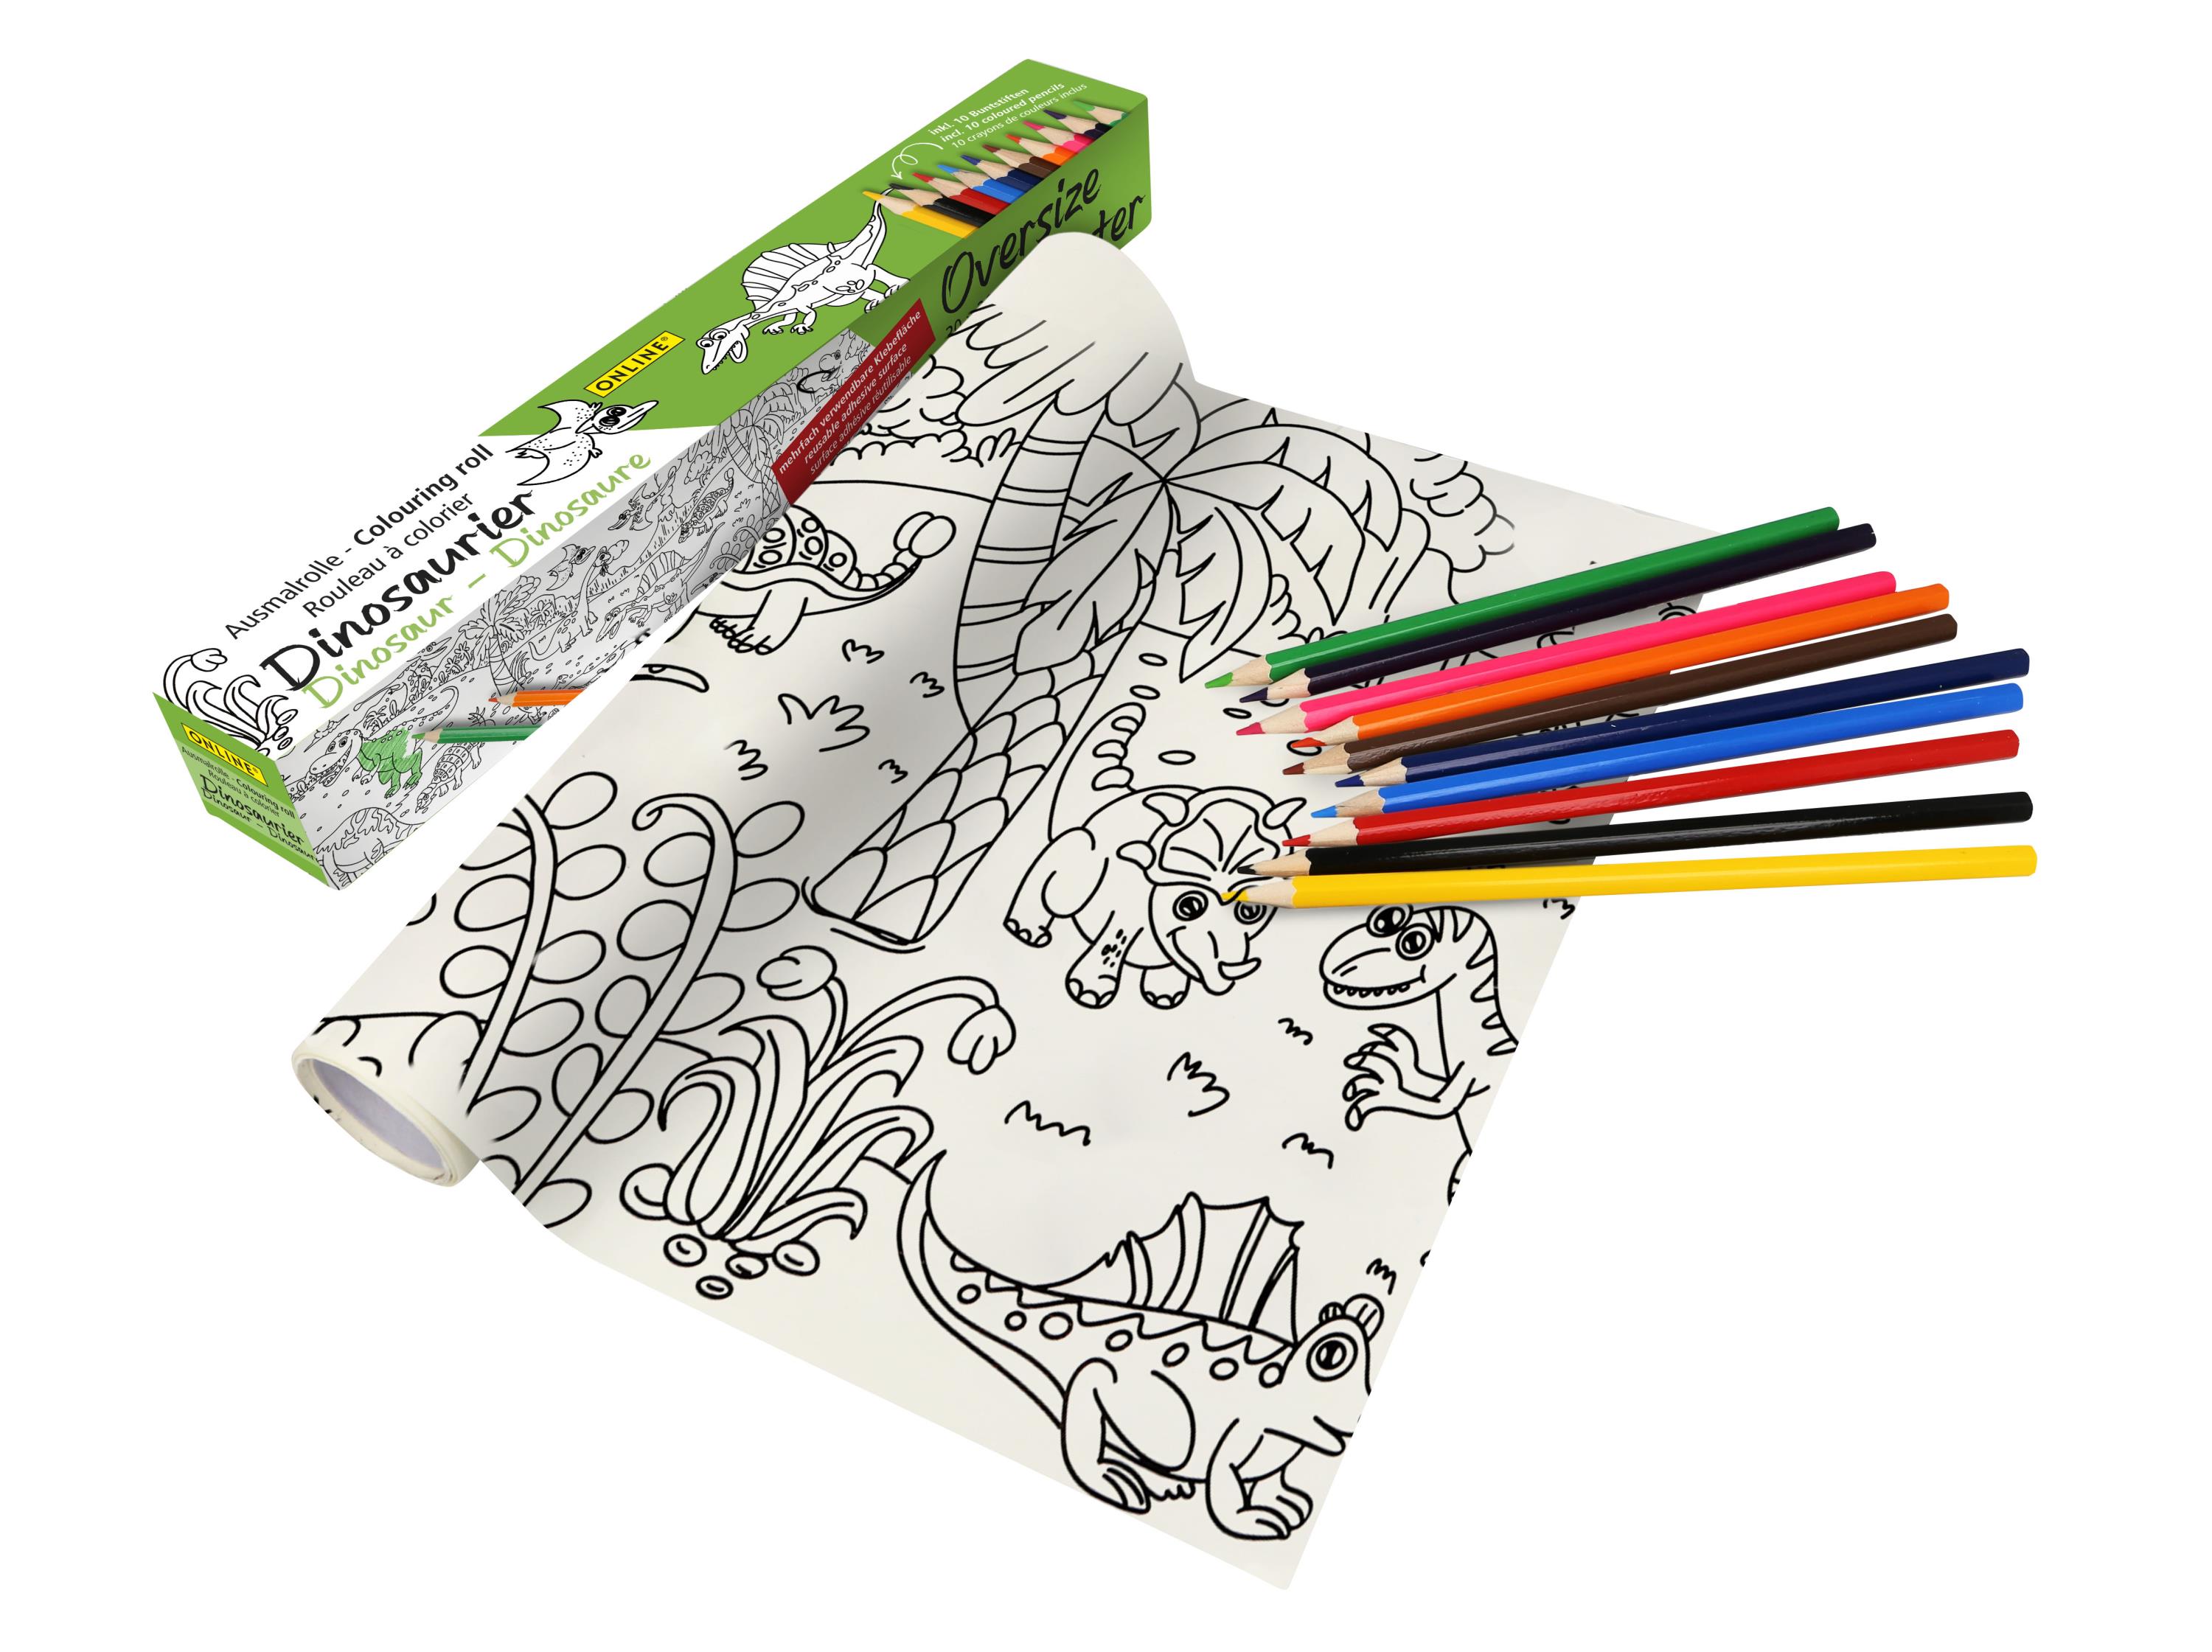 Buntstifte & Malrolle für Kinder zum Ausmalen, 30 x 200 cm, Selbstklebende Zeichenrolle mit Dino-Motiv